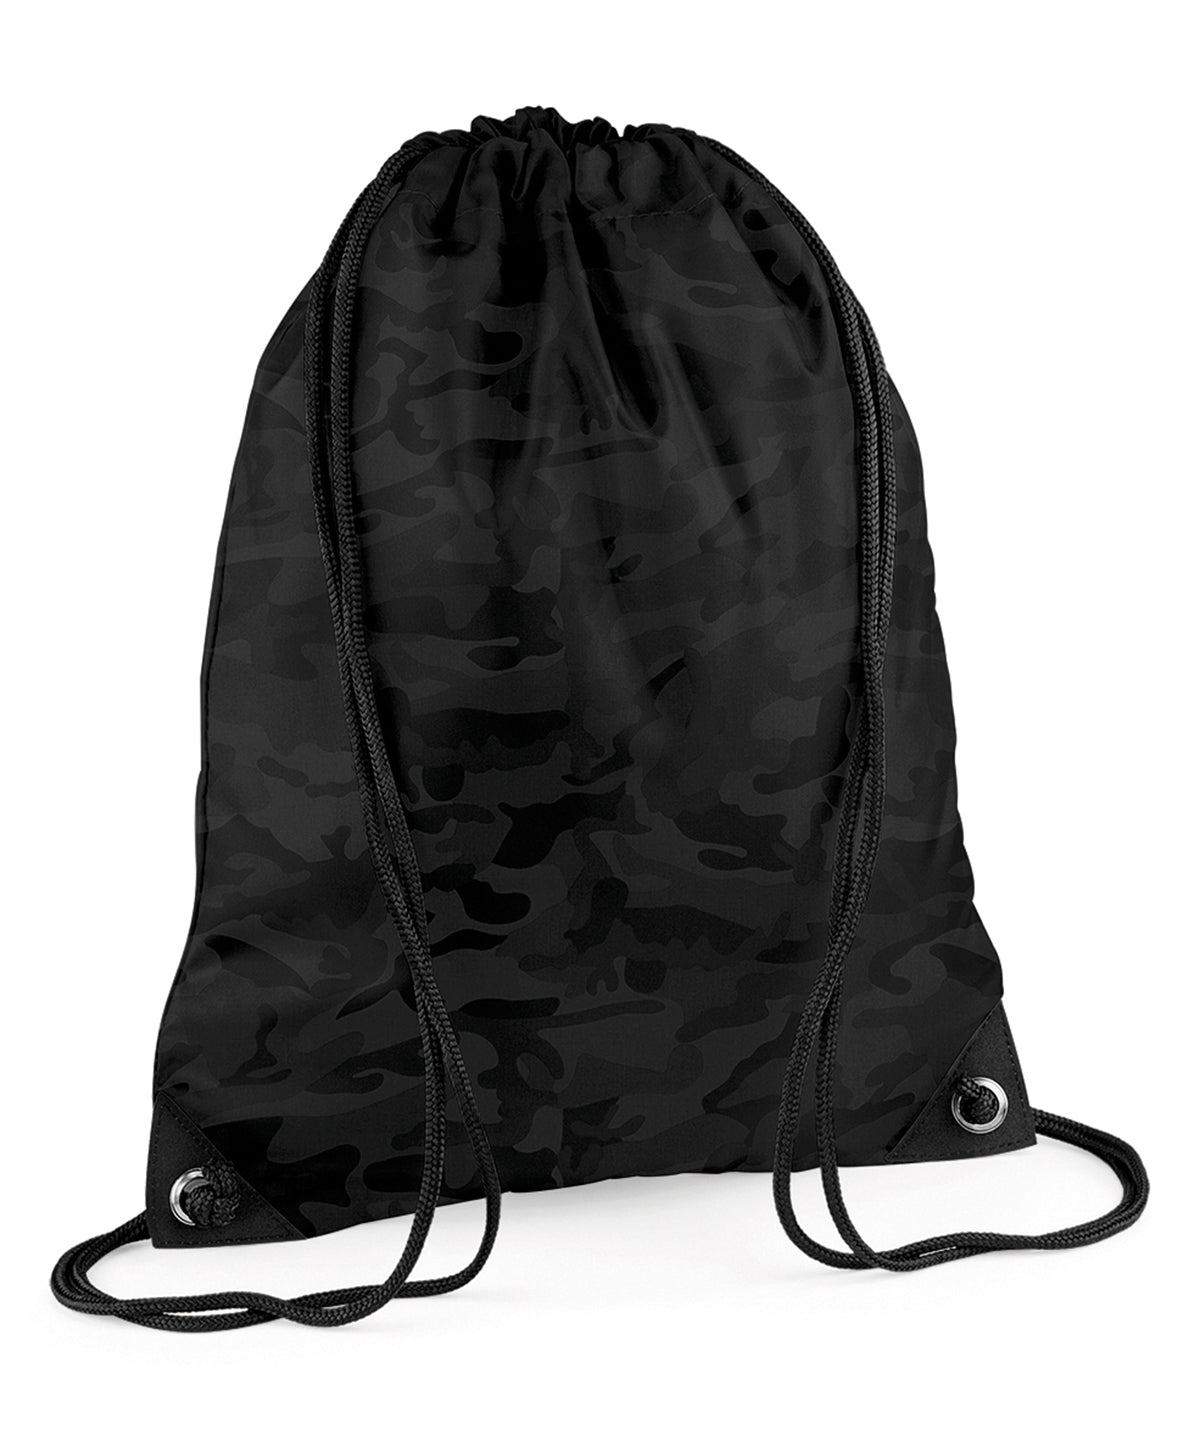 Personalised Bags - Black Bagbase Premium gymsac